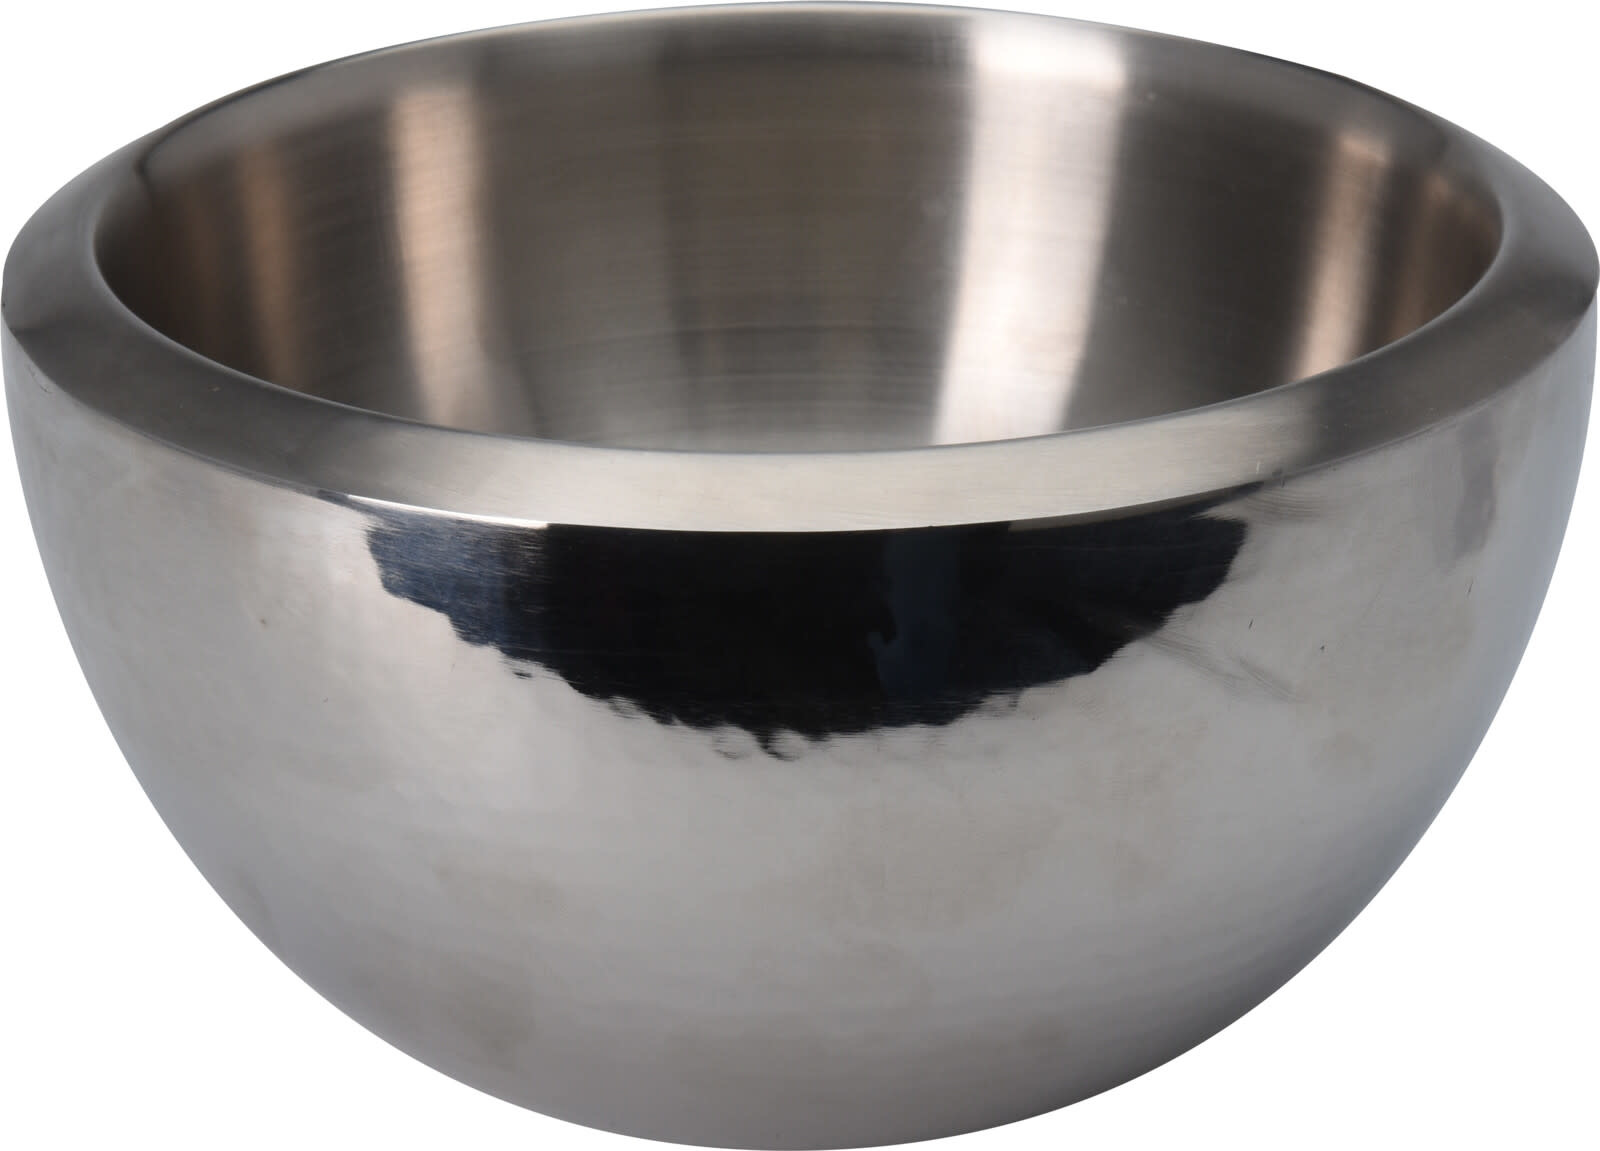 Koopman Bowl Stainless Steel Dia- 75% Off